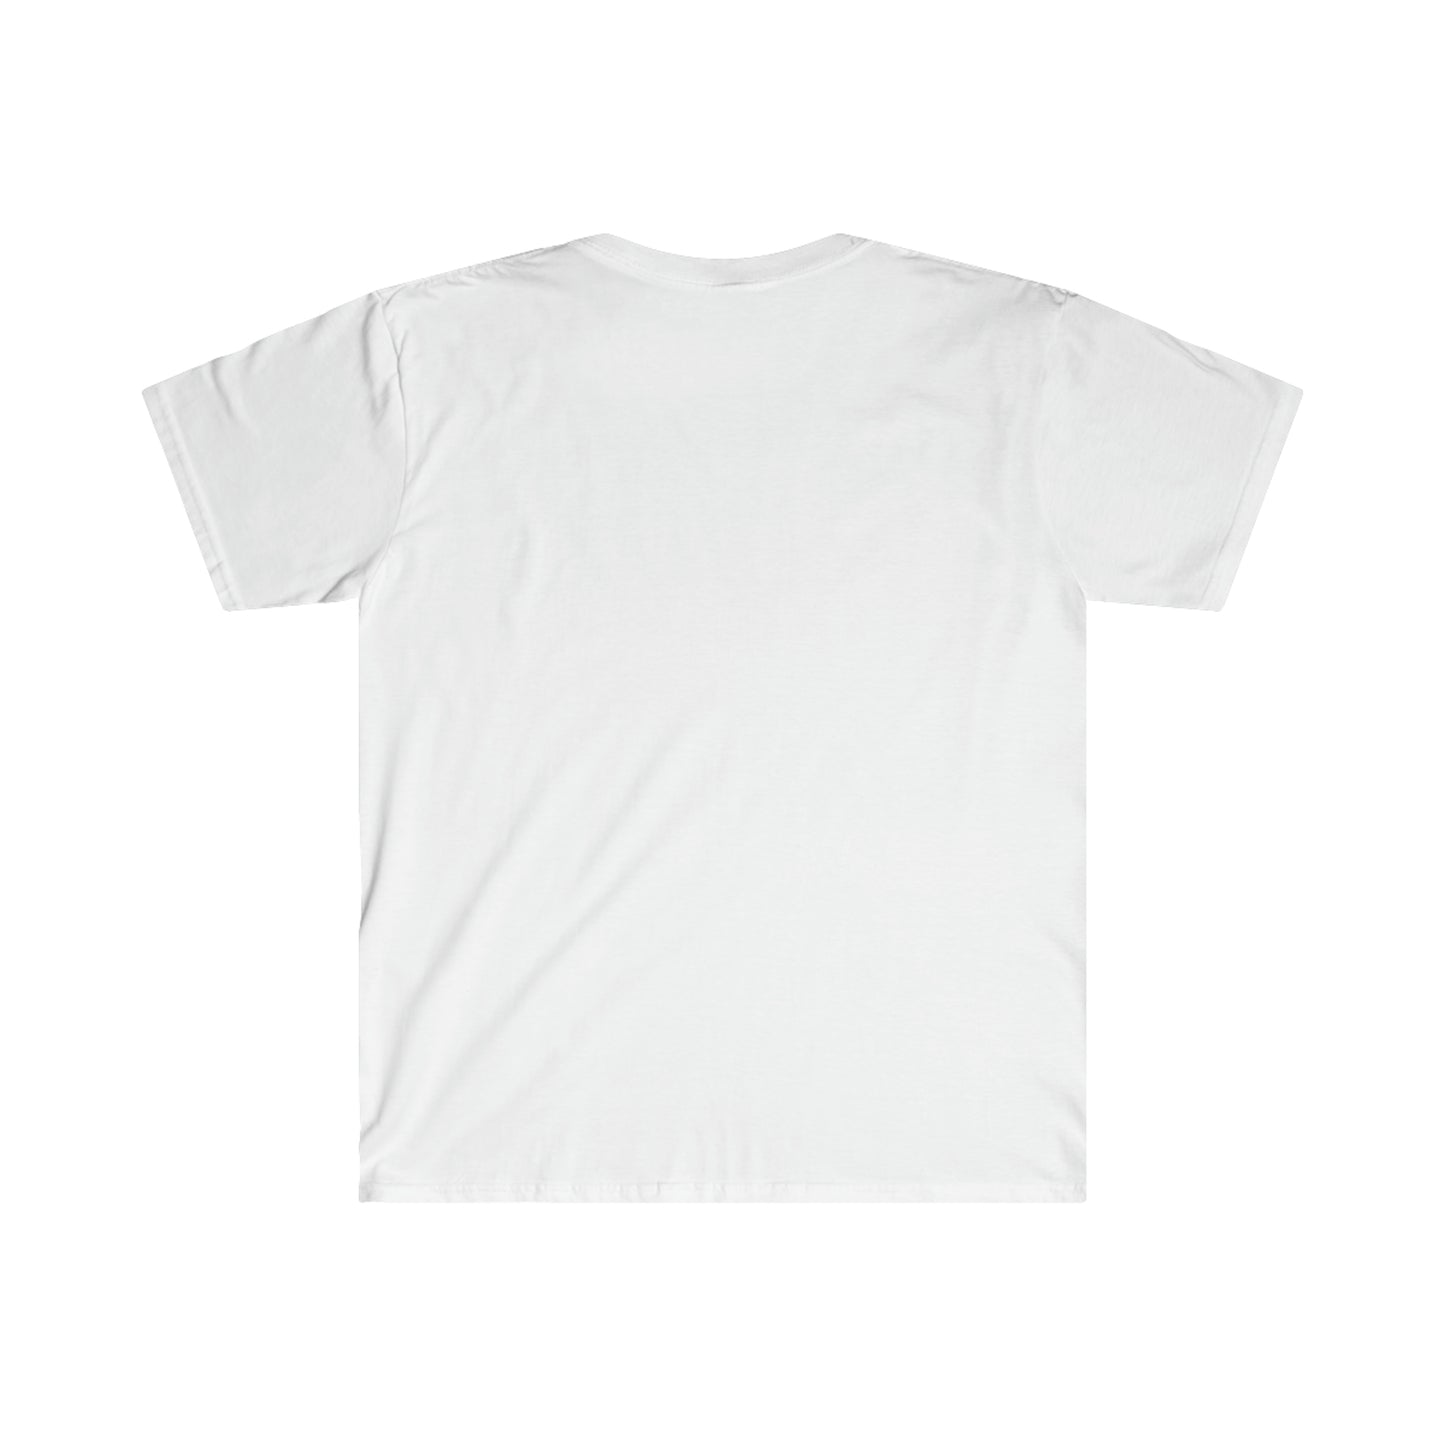 Hydro Pump - Unisex Softstyle T-Shirt - (USA)